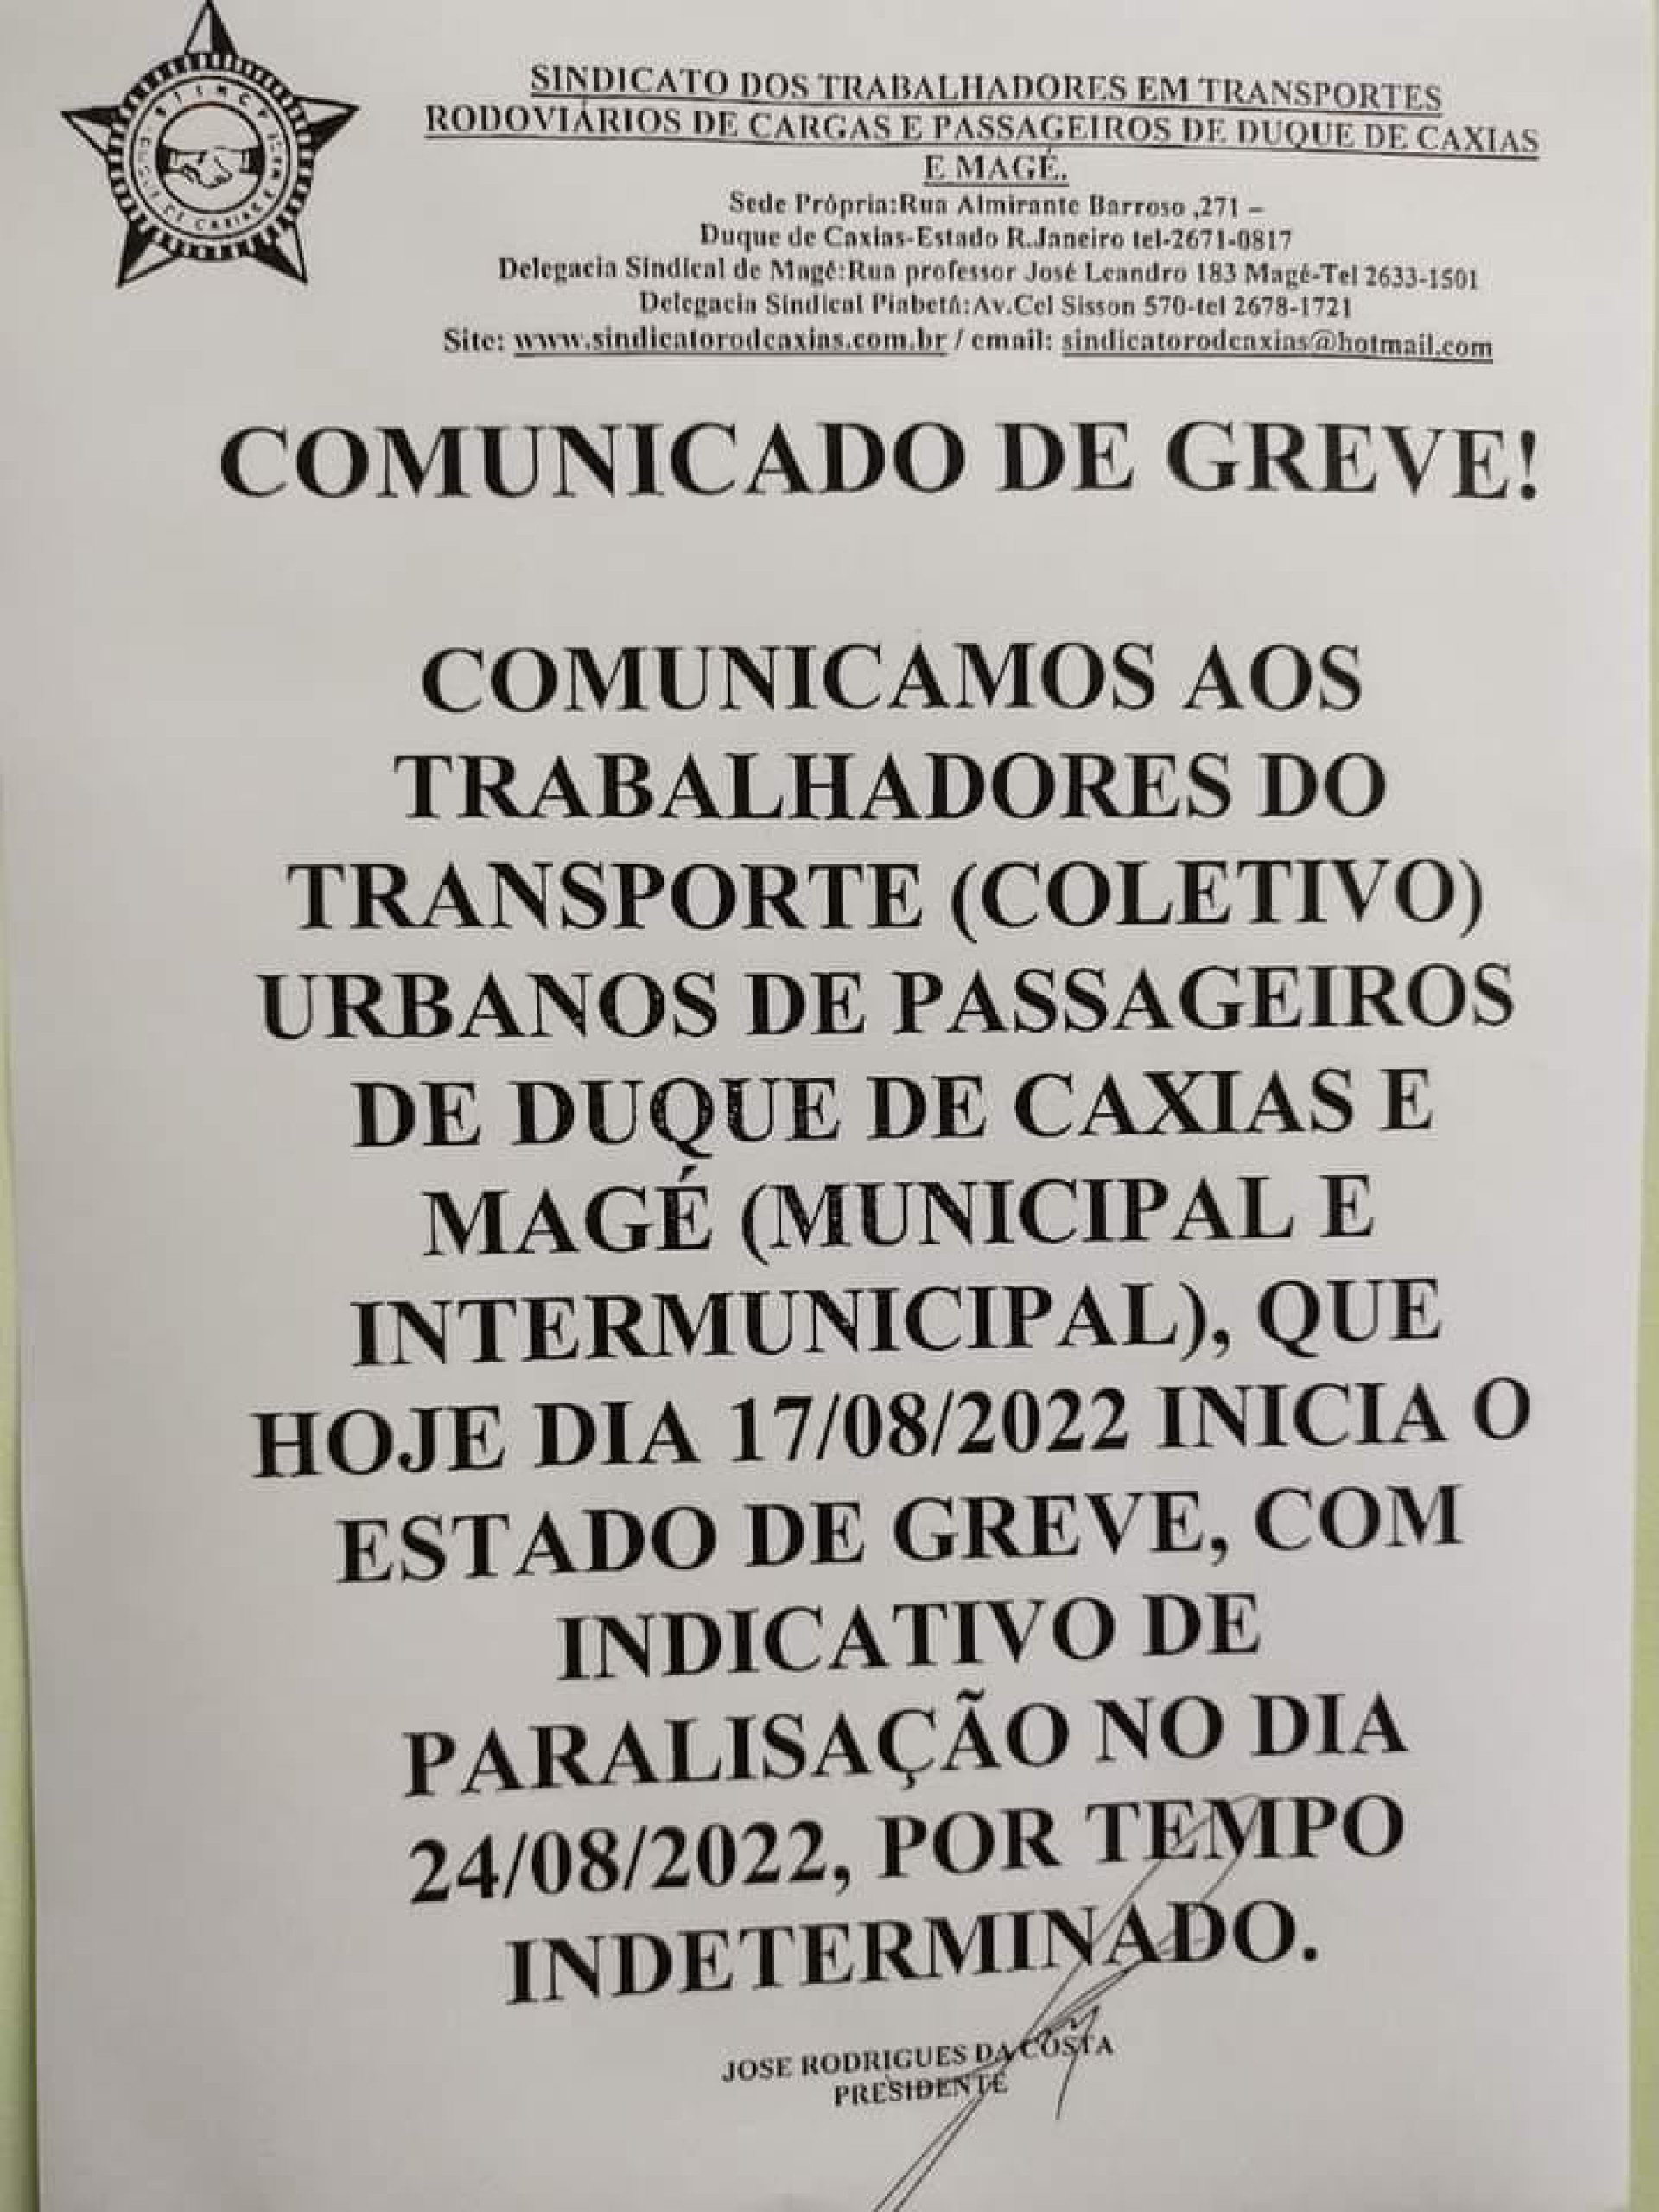 Comunicado dos Rodoviários informava para paralisação nesta quarta-feira (24), em Caxias - Reprodução